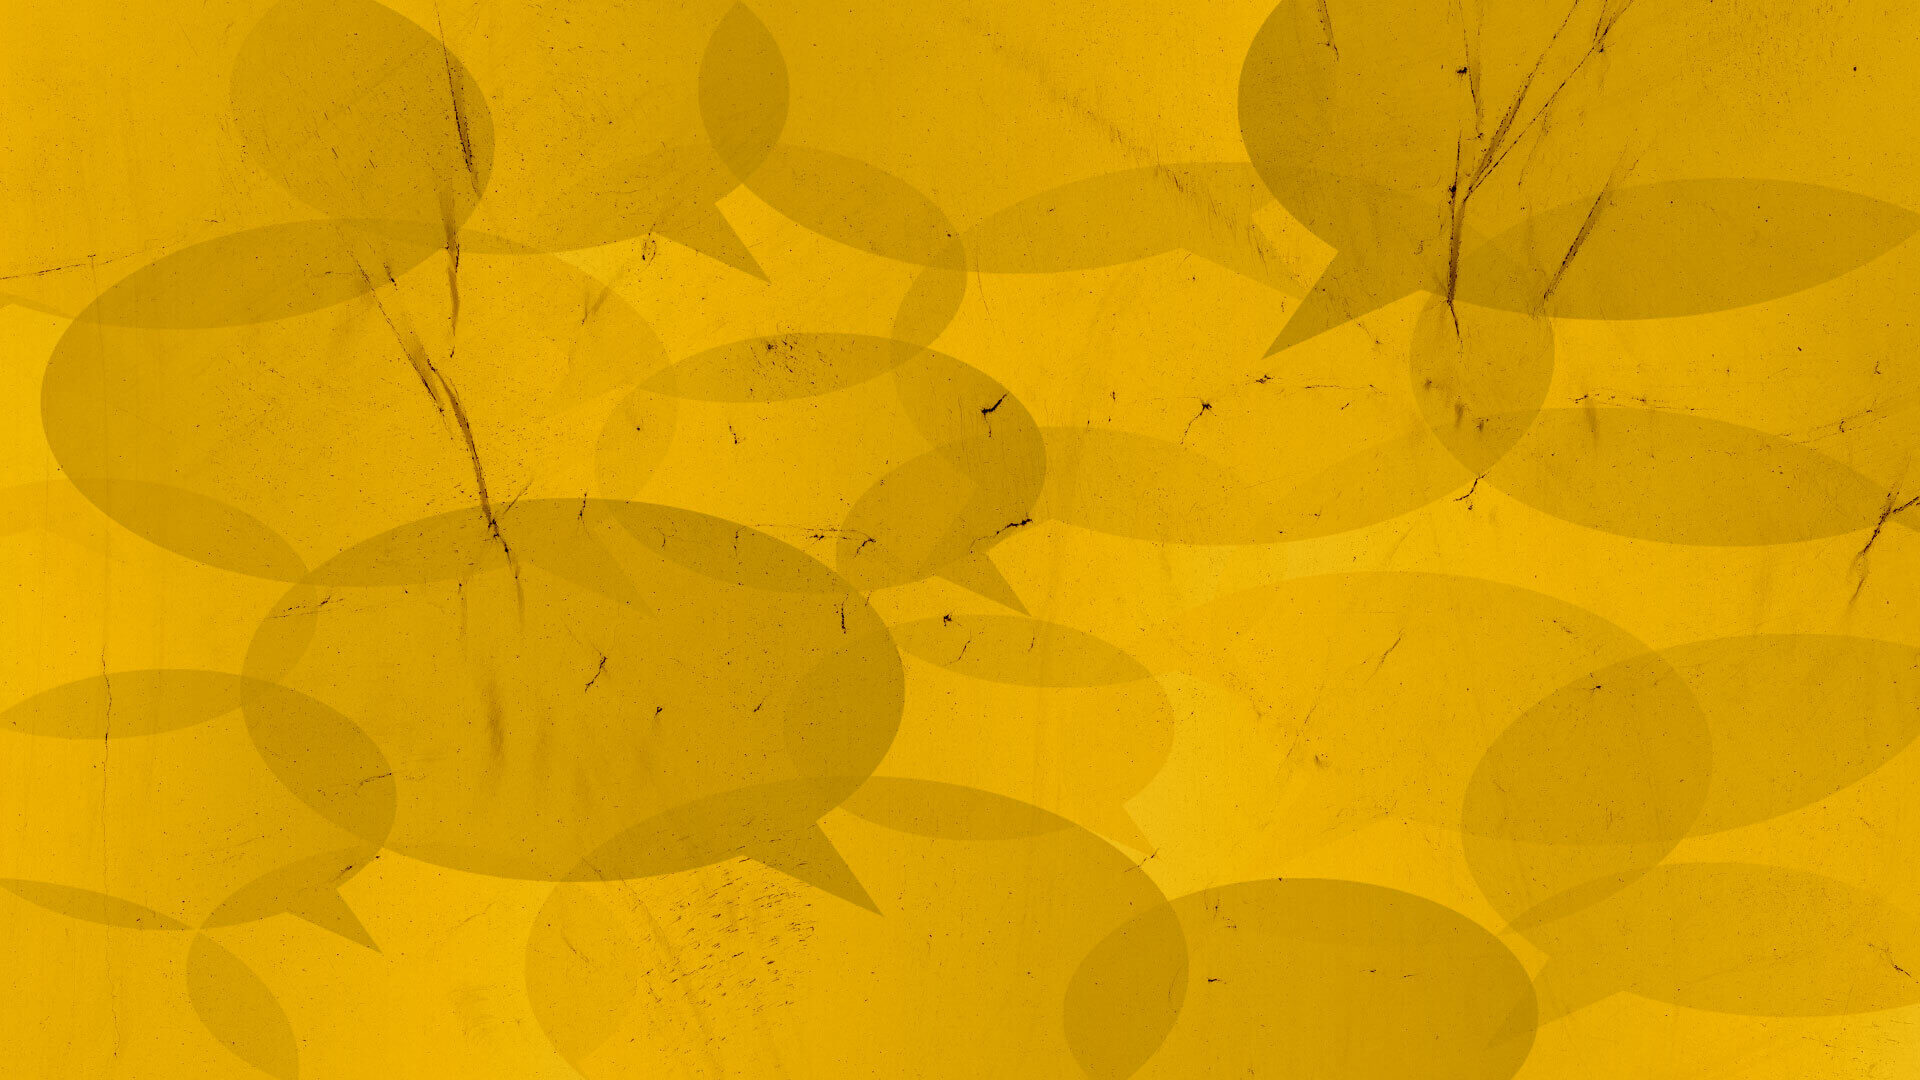 Imagem de capa com fundo amarelo e ilustrações de balões de diálogo vazios nos tons de cinza